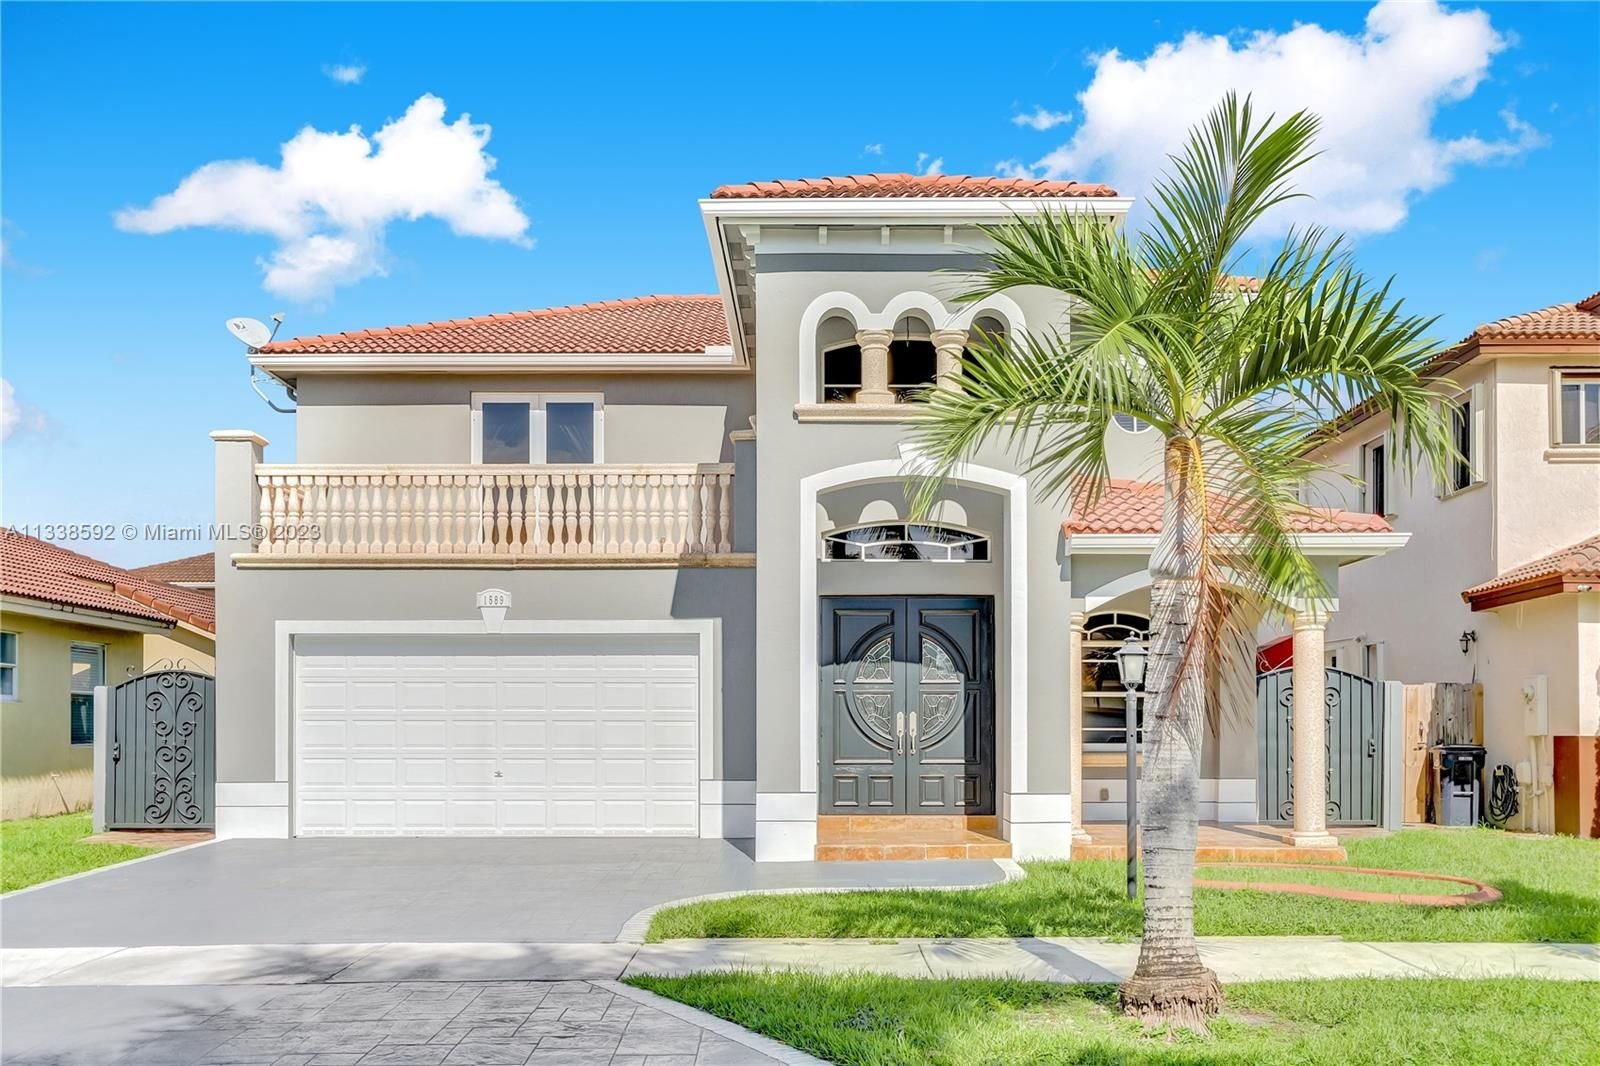 Real estate property located at 1589 154th Path, Miami-Dade County, Miami, FL